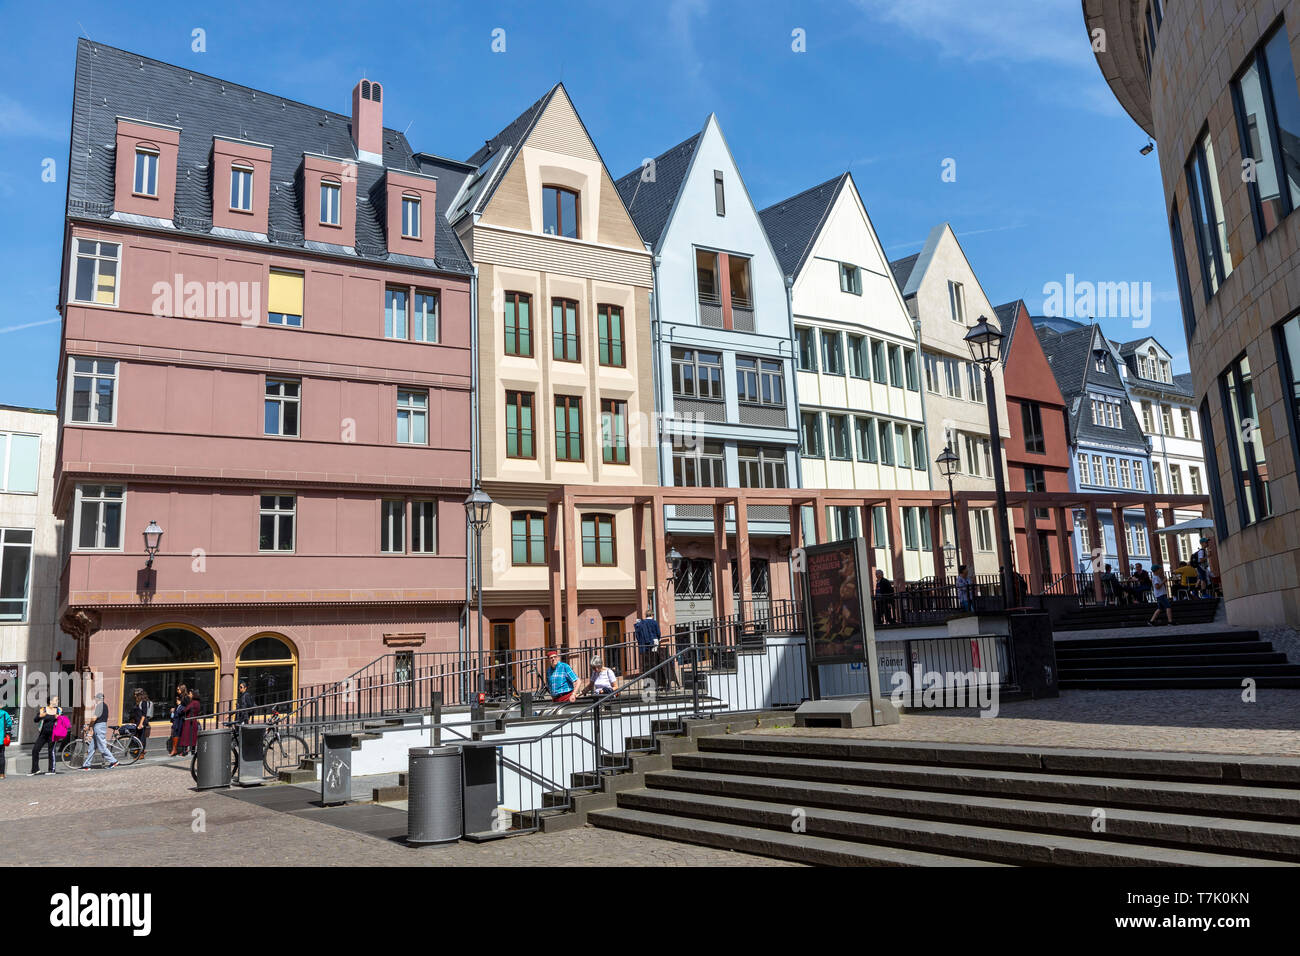 Frankfurt am Main, die neue Altstadt, rekonstruierte Häuser im Altstadtviertel zwischen Römer und Dom, Markt Strasse, Stock Photo